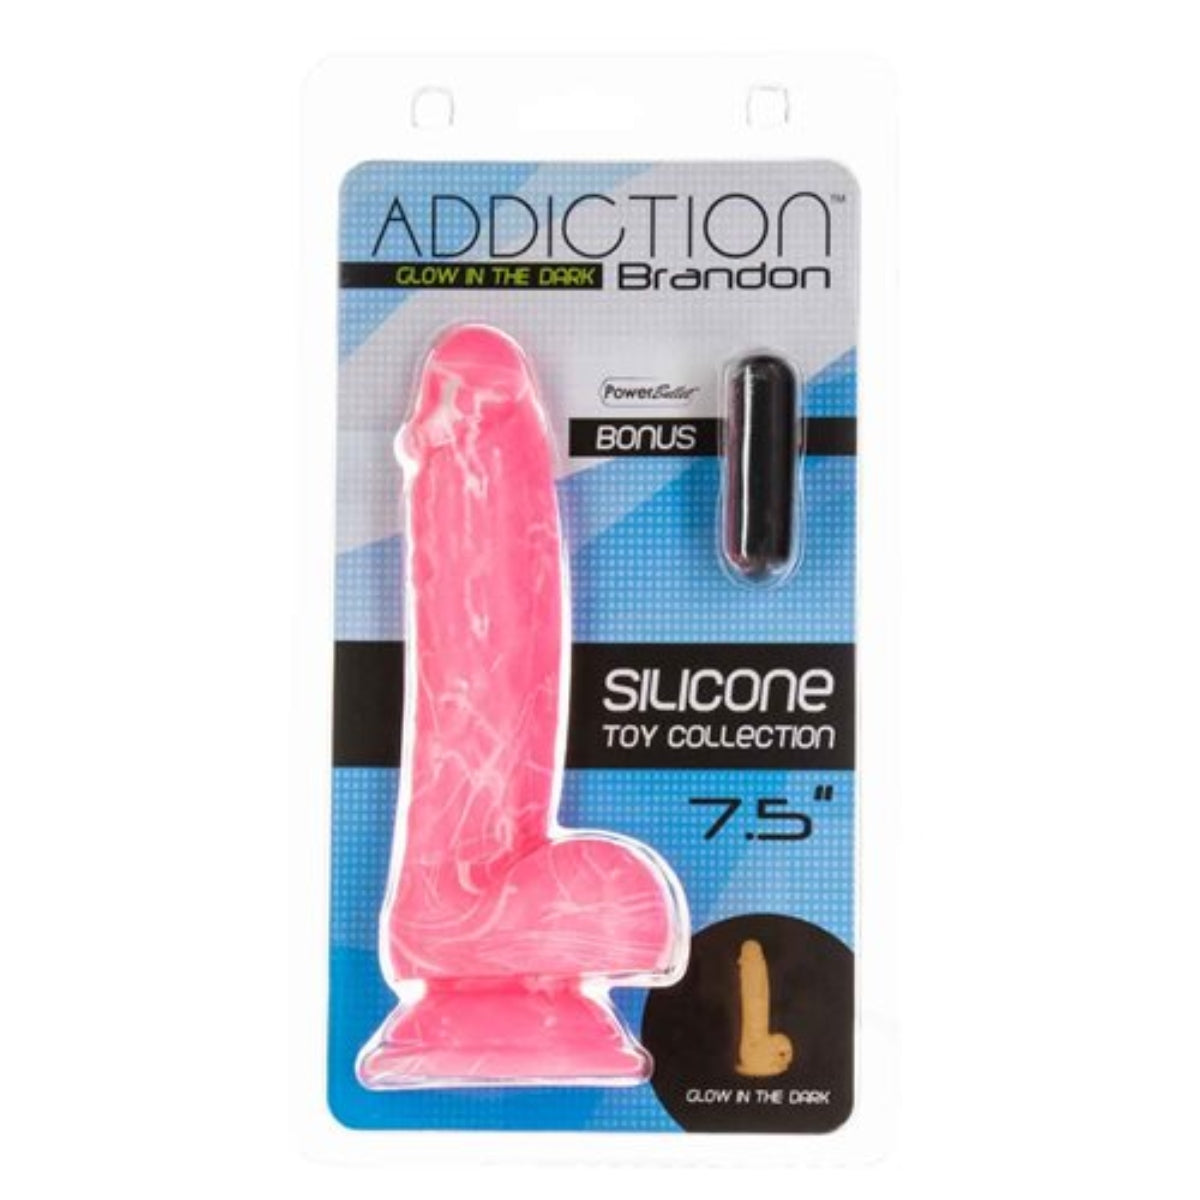 Addiction Brandon Glow In The Dark Silicone Dildo Pink Swirl 7.5 Inch - Simply Pleasure